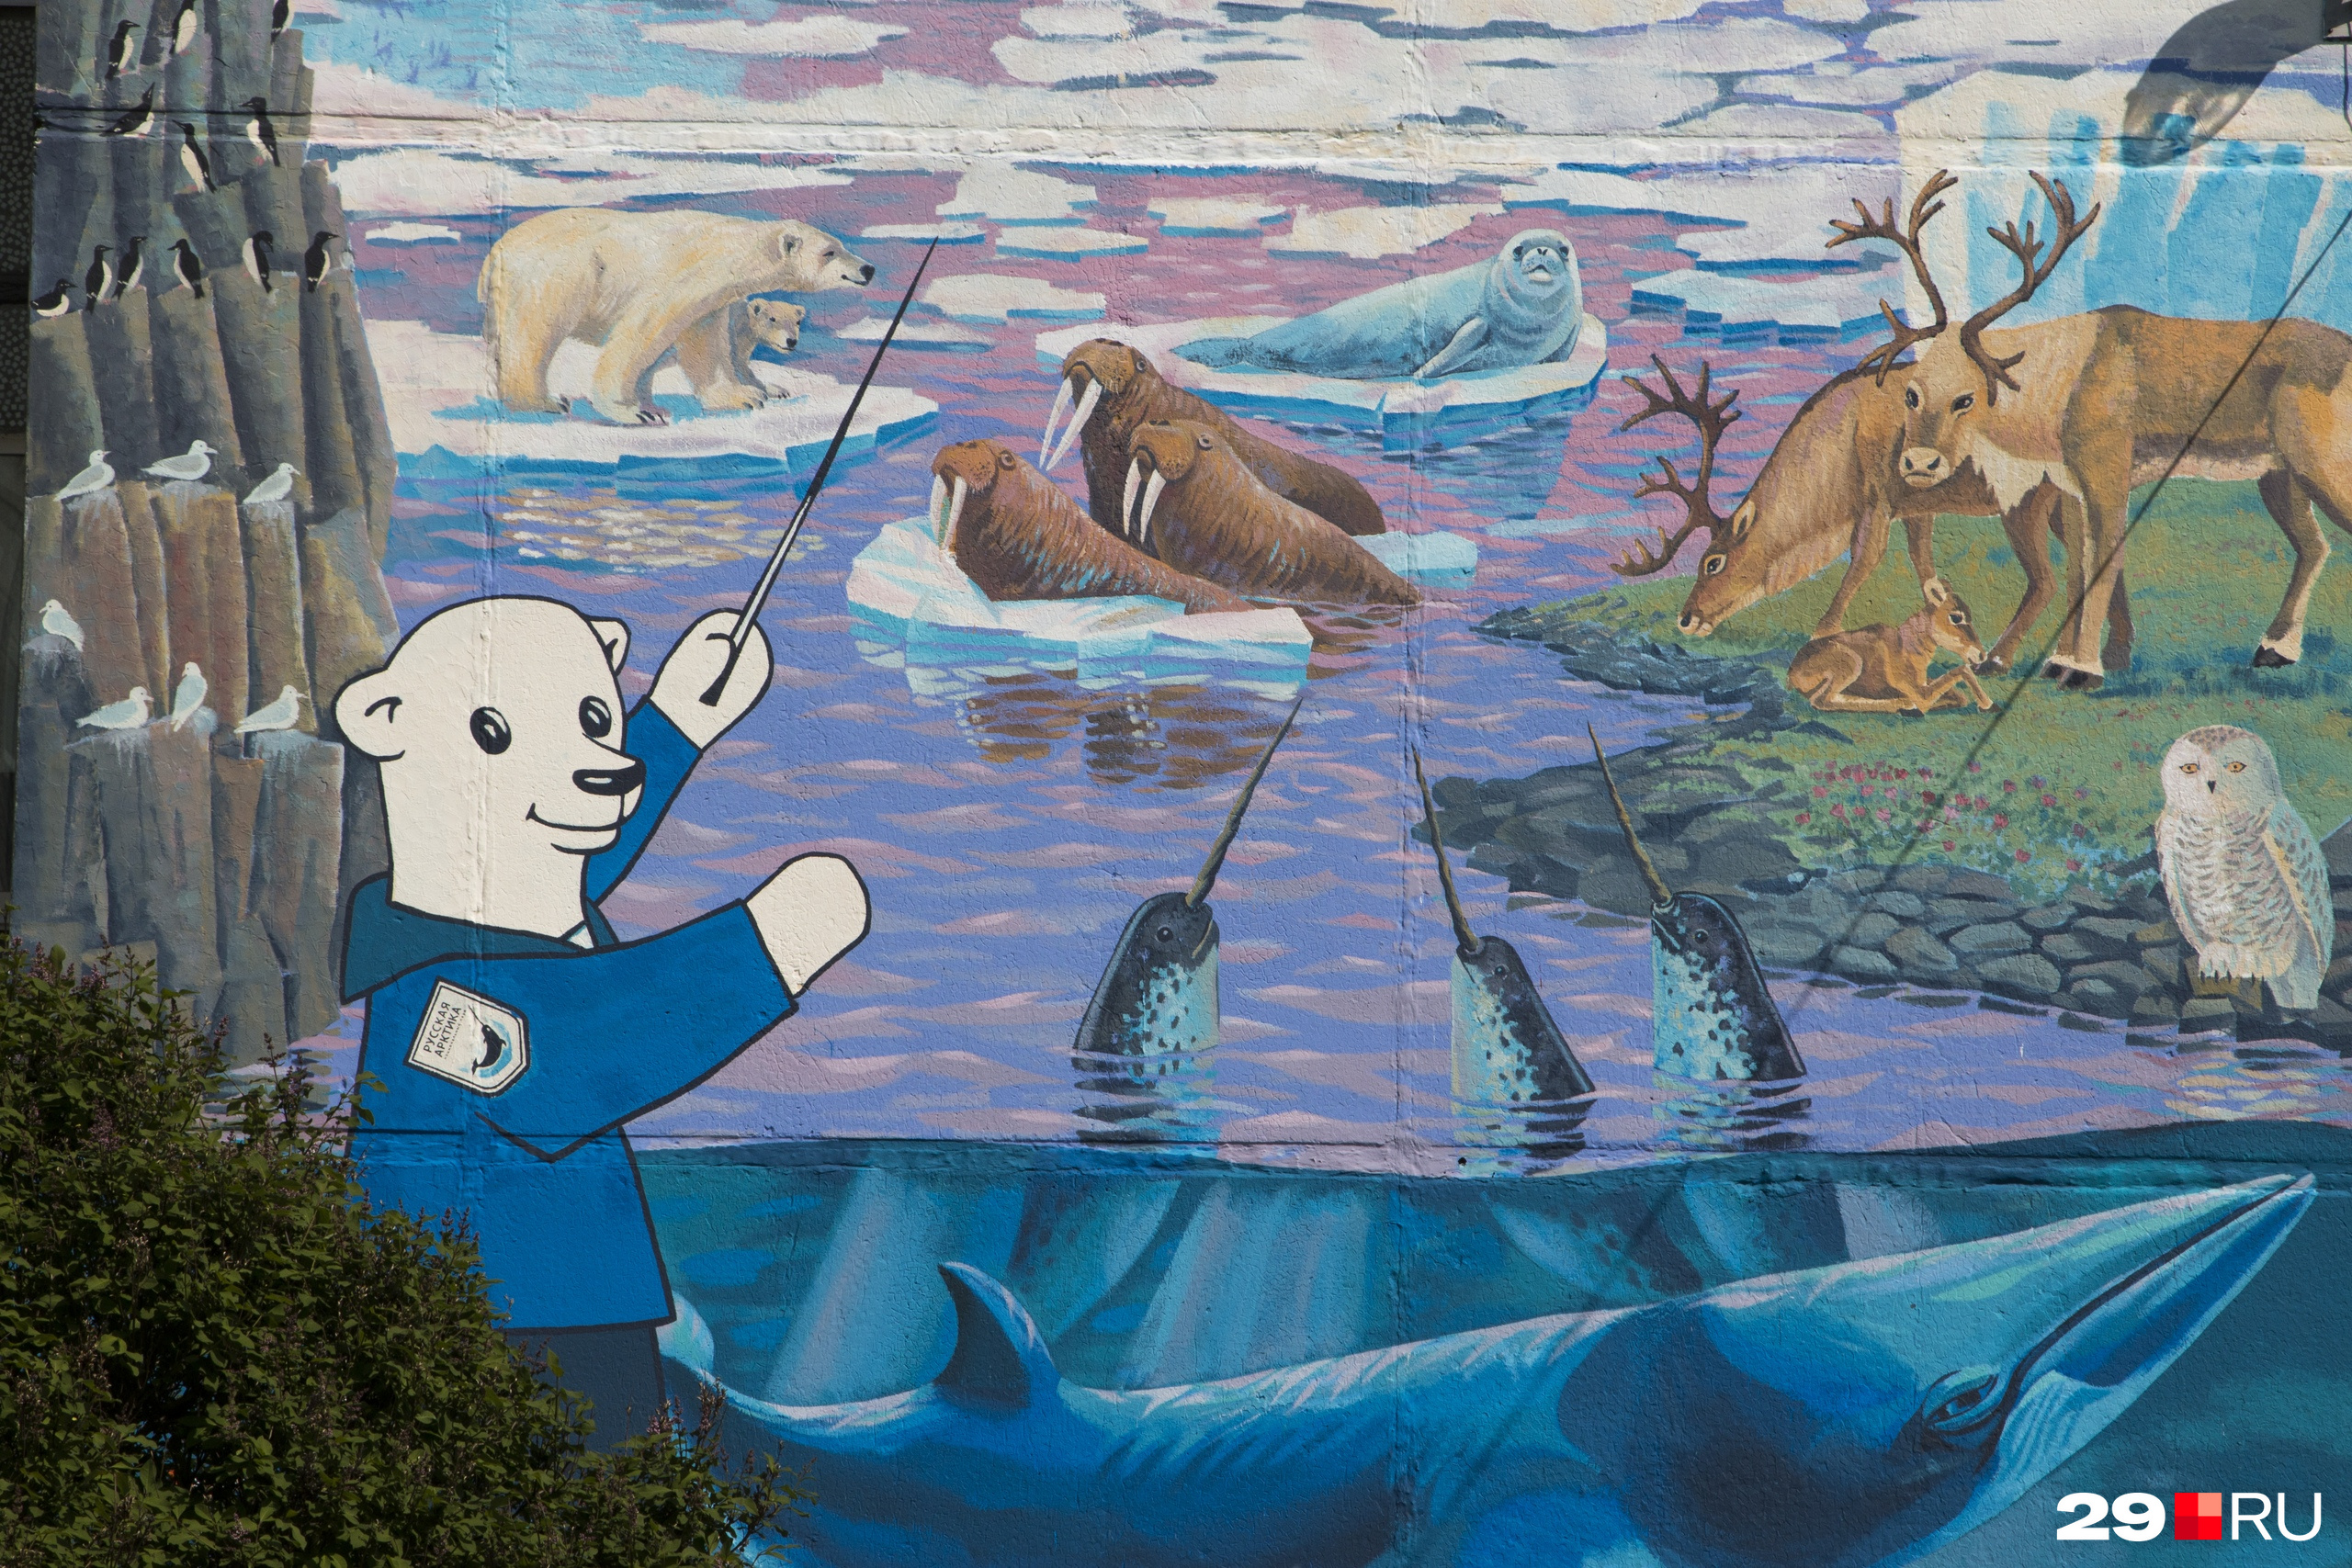 Медвежонок Михайлушка — герой учебника «Арктическая азбука», созданного нацпарком